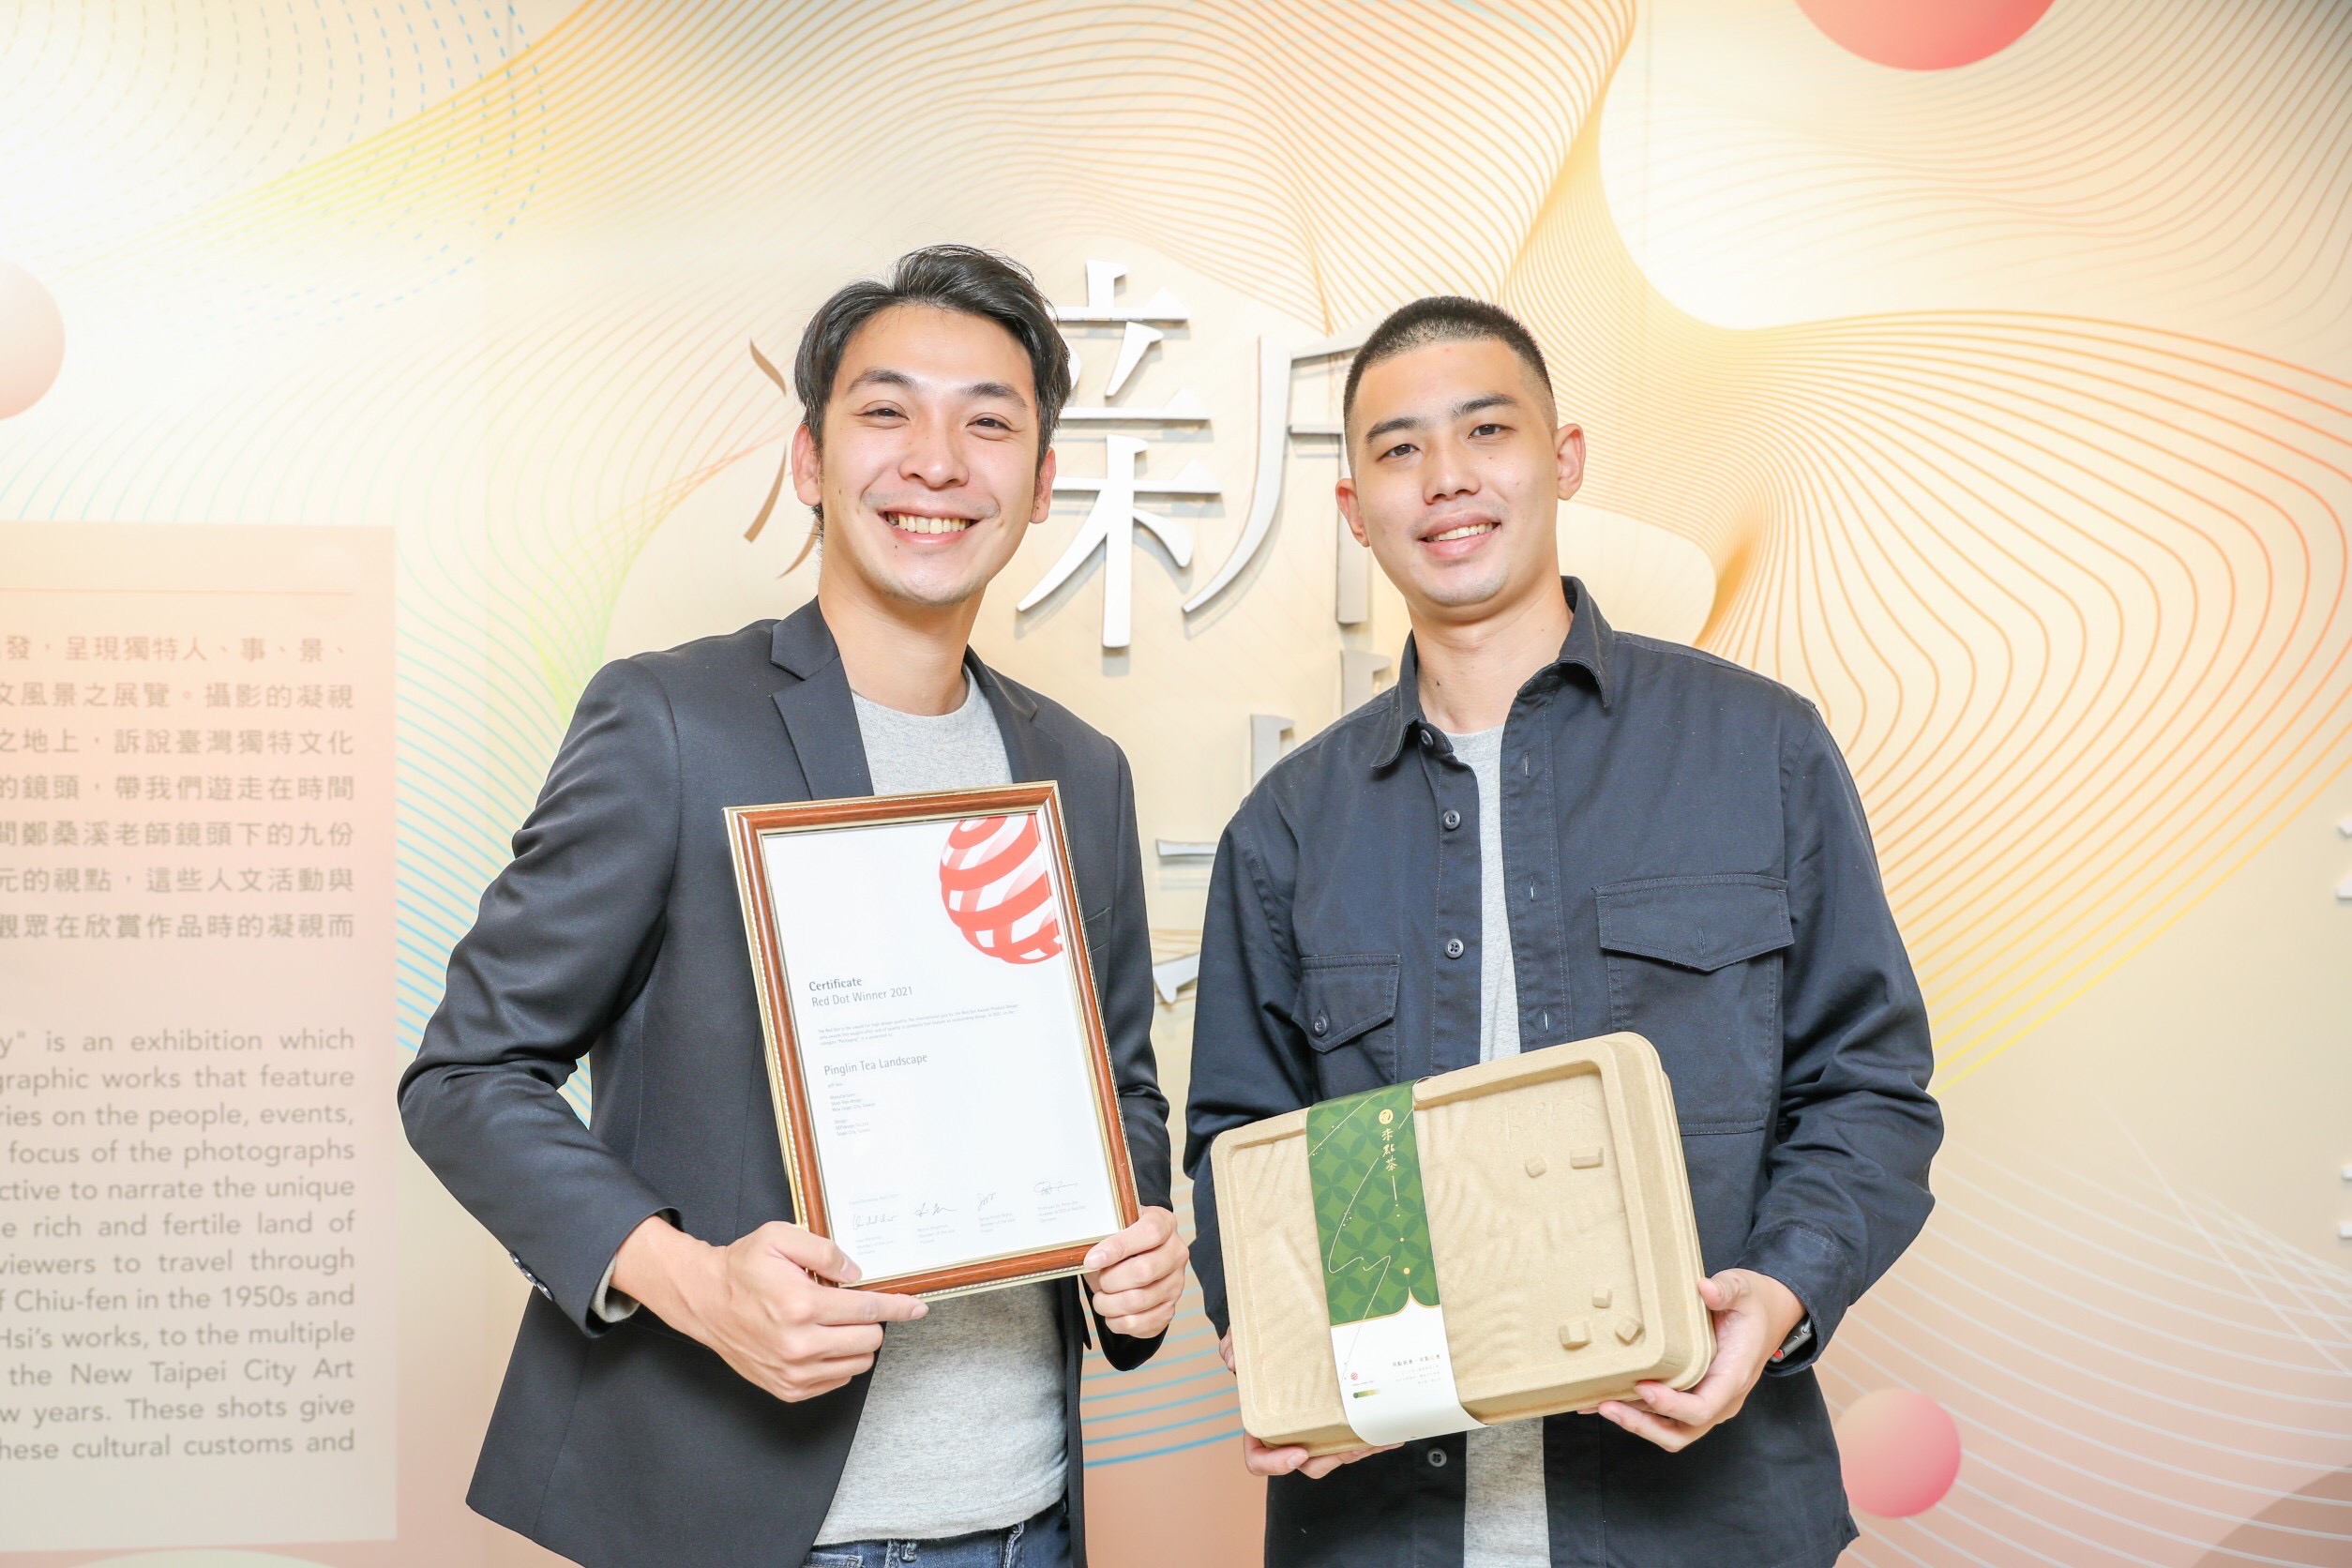 青農蔡威德(左)、王翊倫(右)展示榮獲德國紅點產品設計獎-茶山禮盒